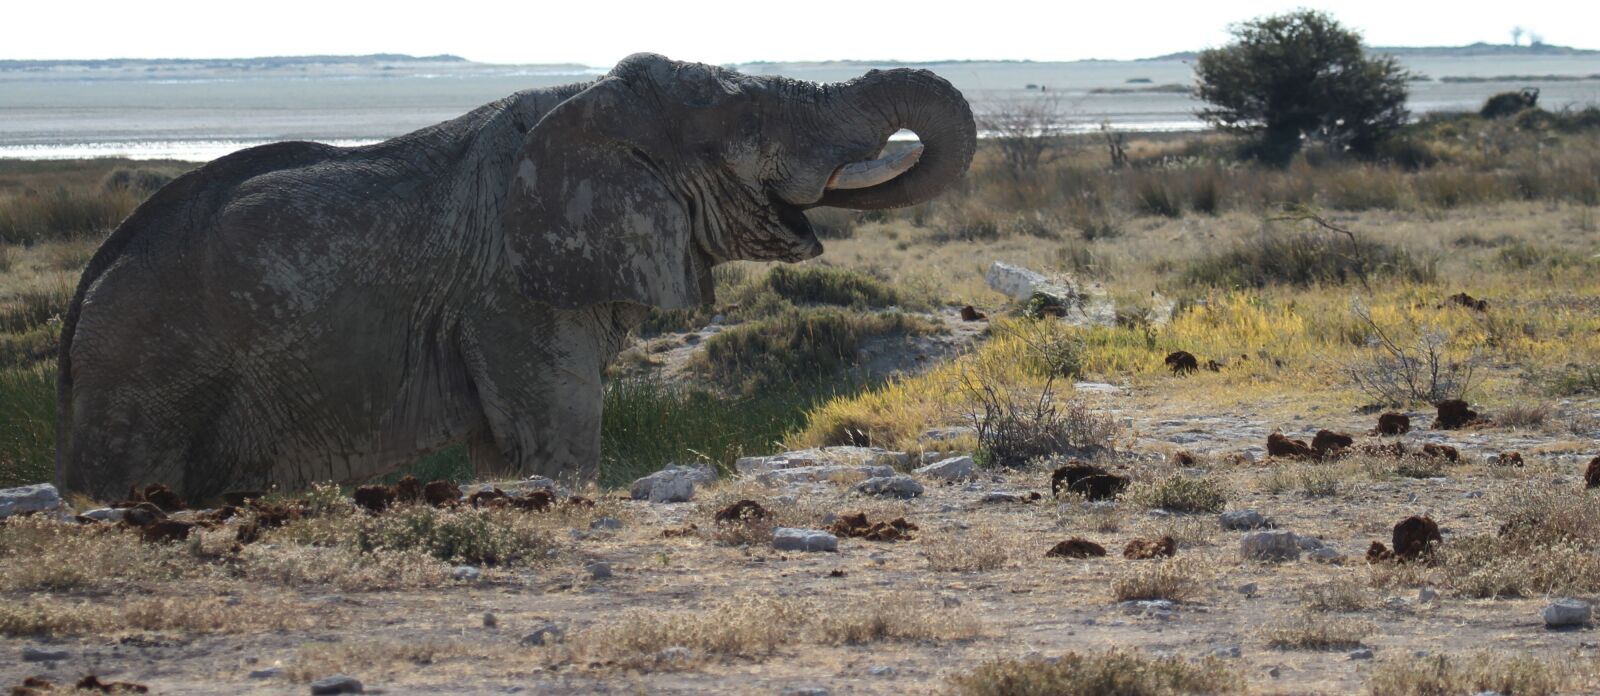 Canon EF 100-400mm F4.5-5.6L IS USM sample photo. Elephant, etosha, namibia photography